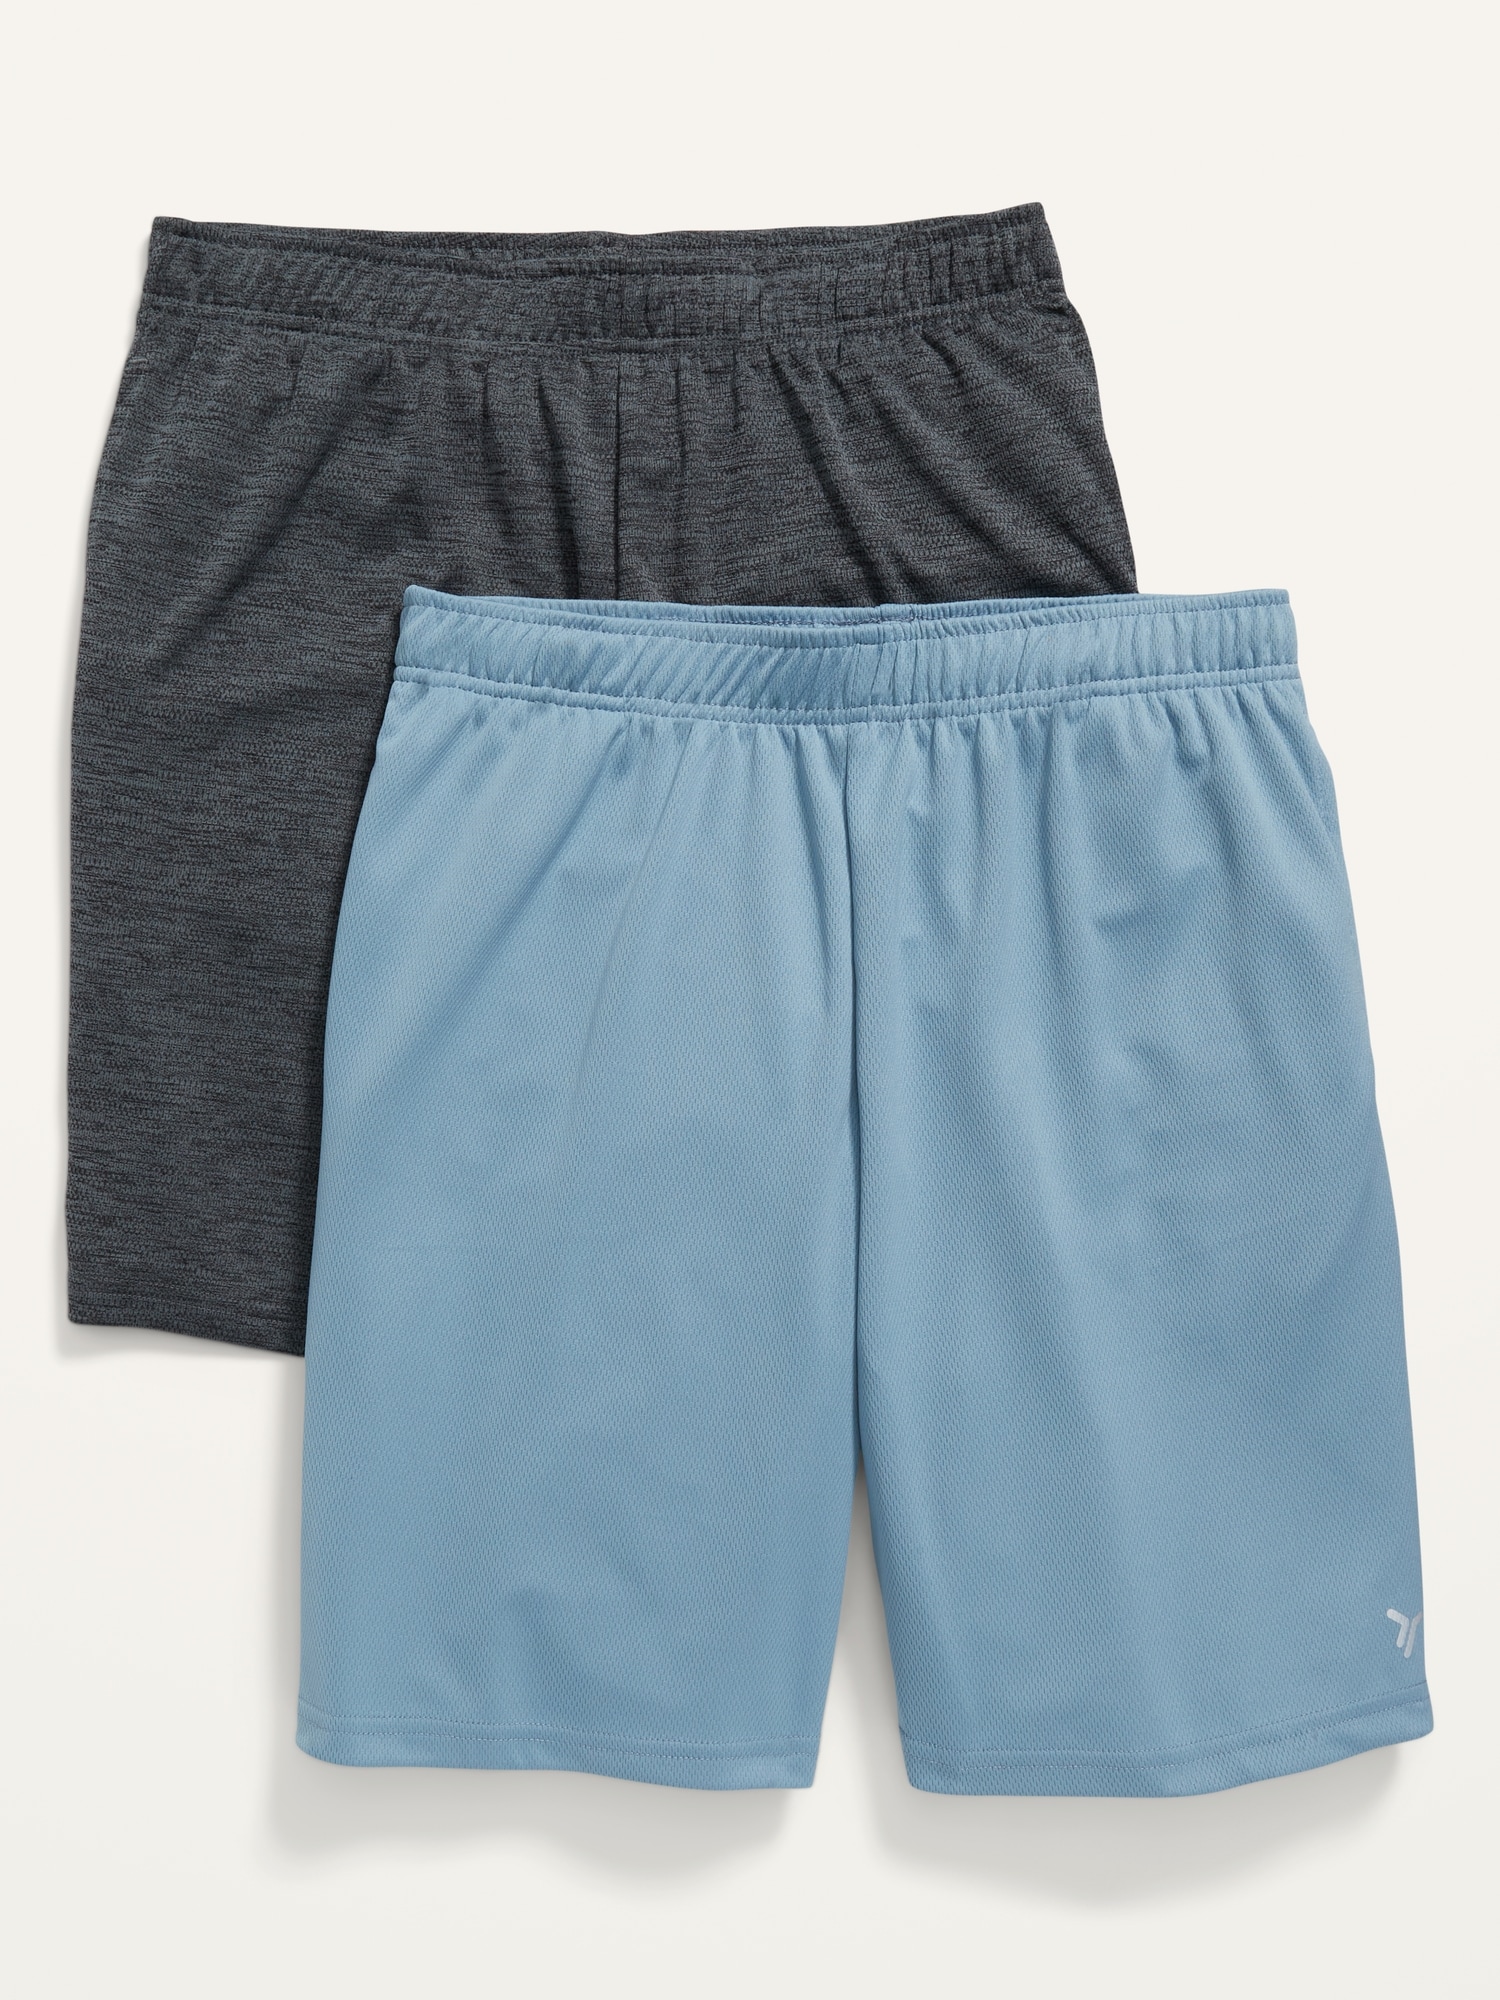 Men's Shorts Bundle